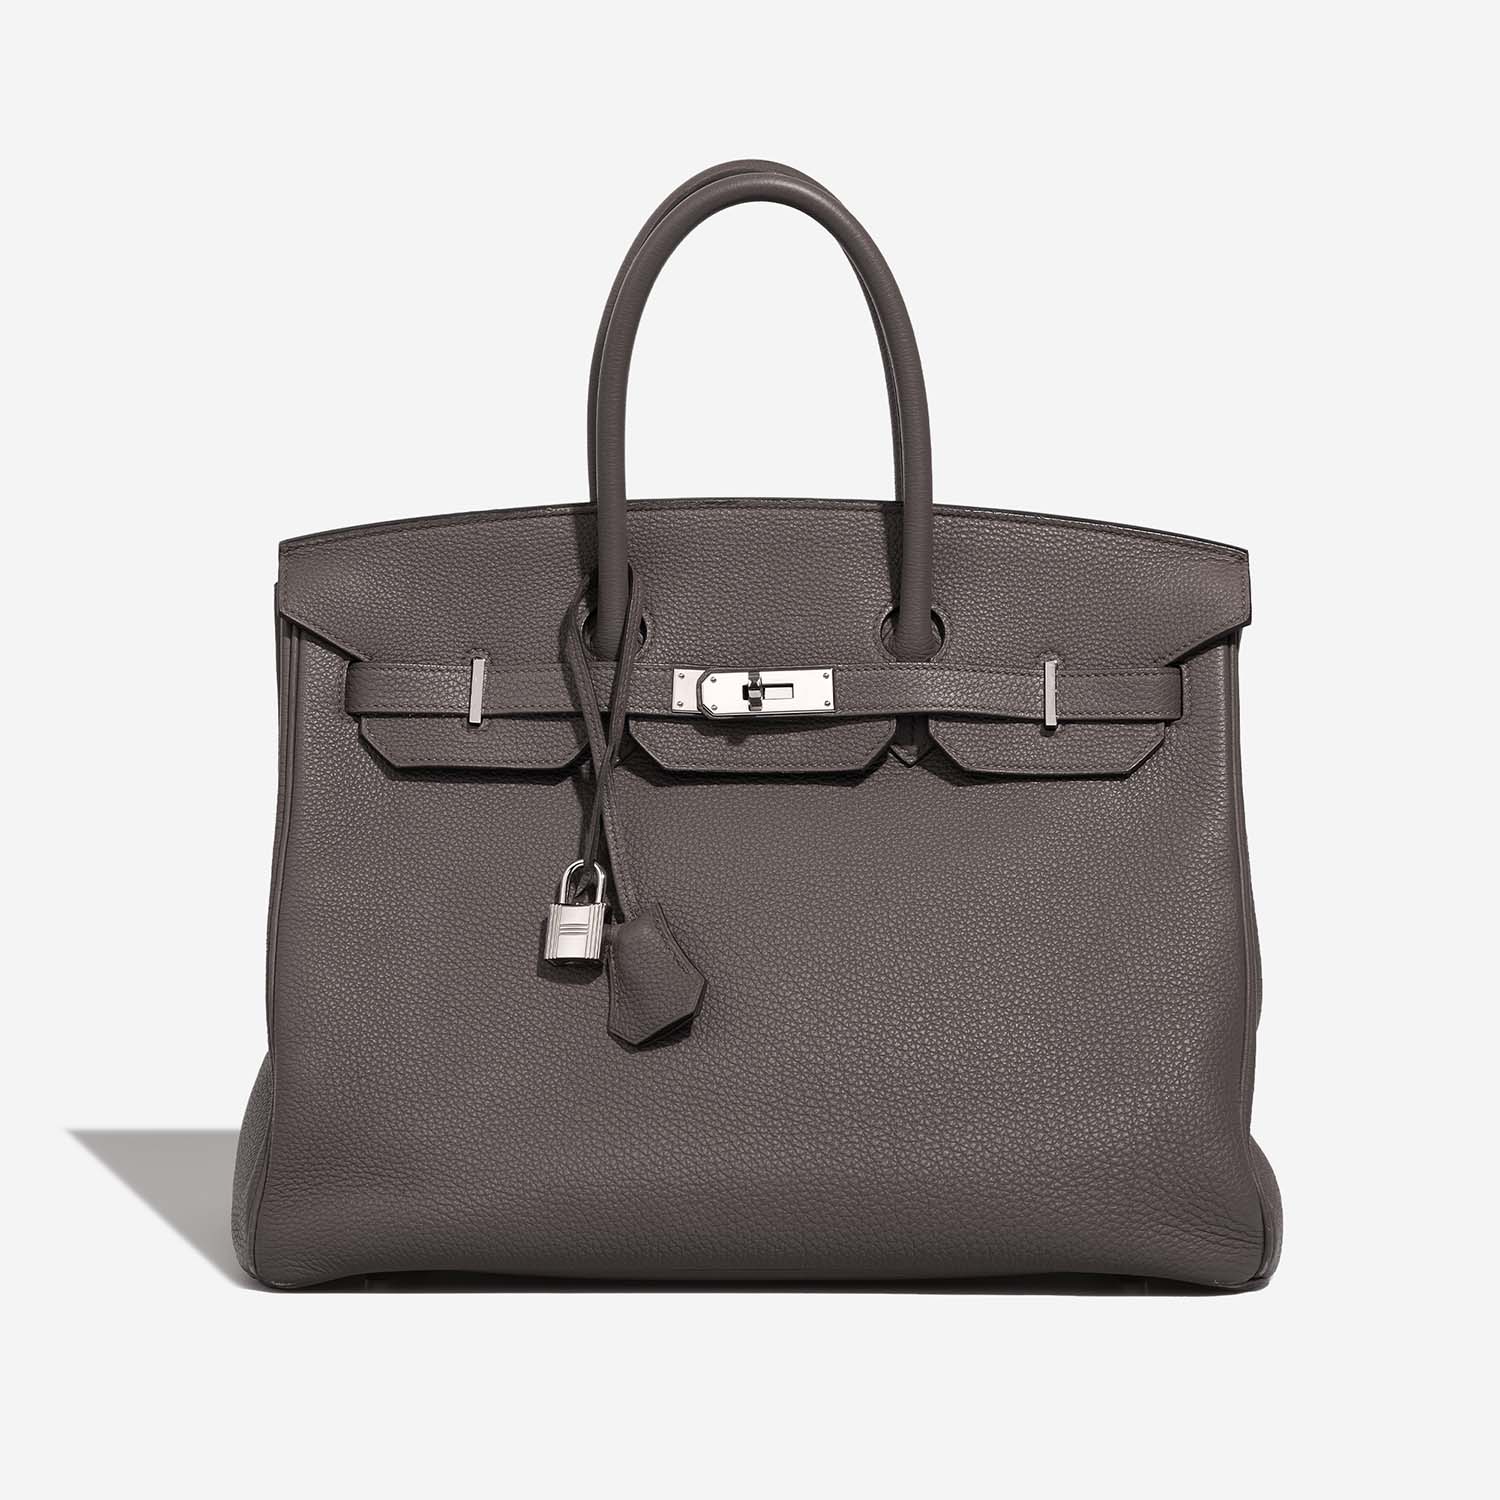 Hermès Birkin 35 Etain 2F 1 S | Verkaufen Sie Ihre Designertasche auf Saclab.com